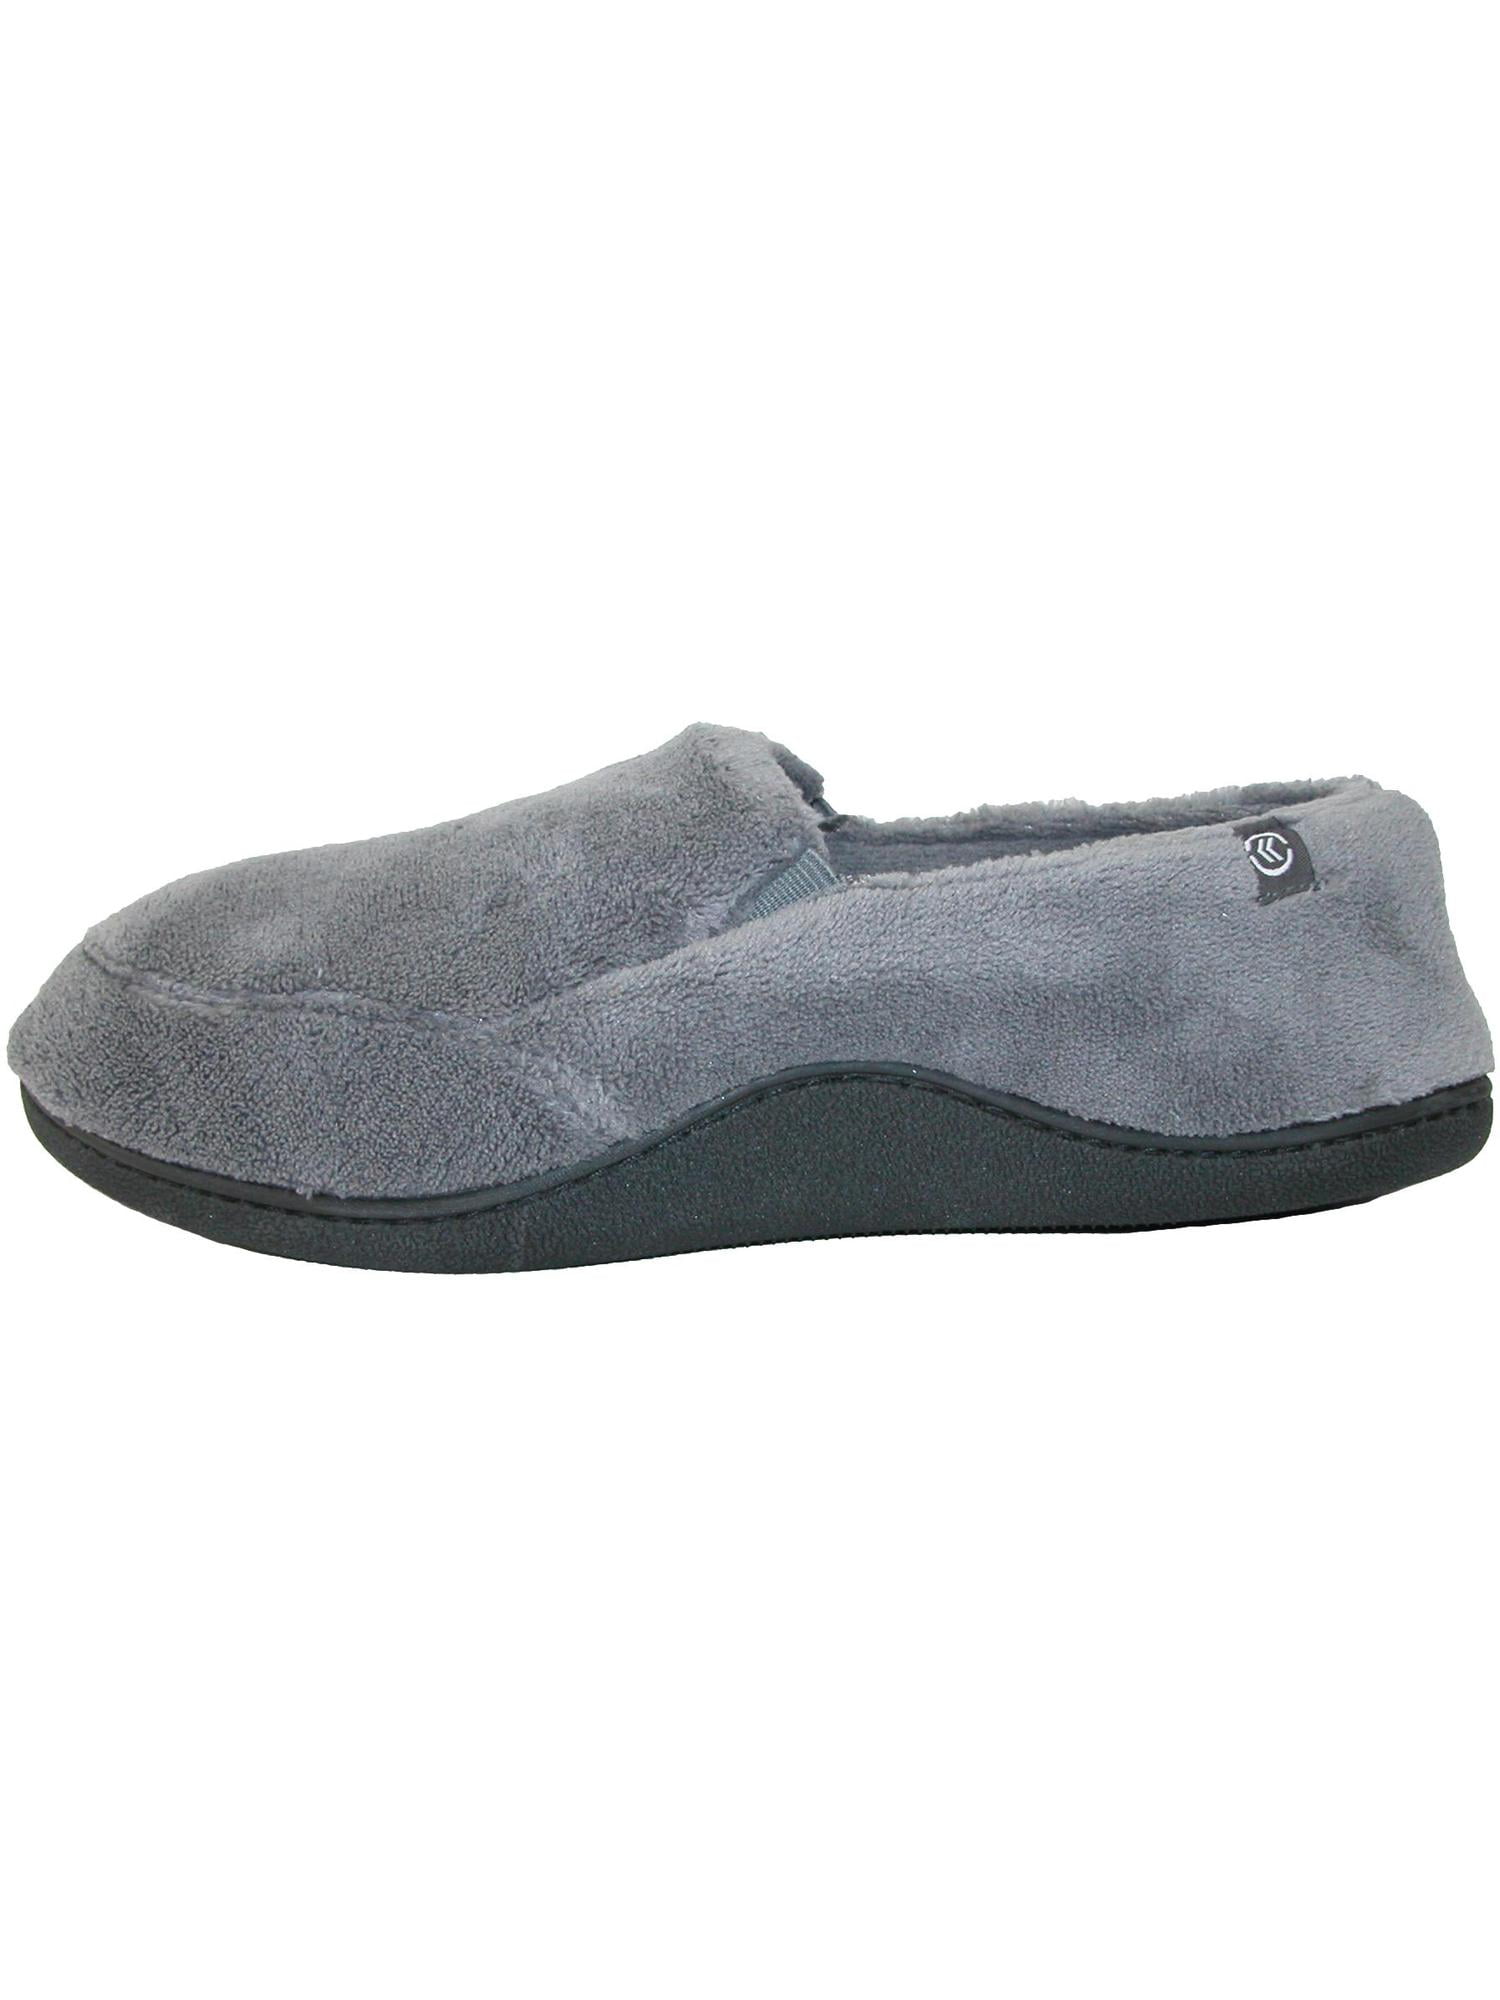 isotoner men's slippers memory foam